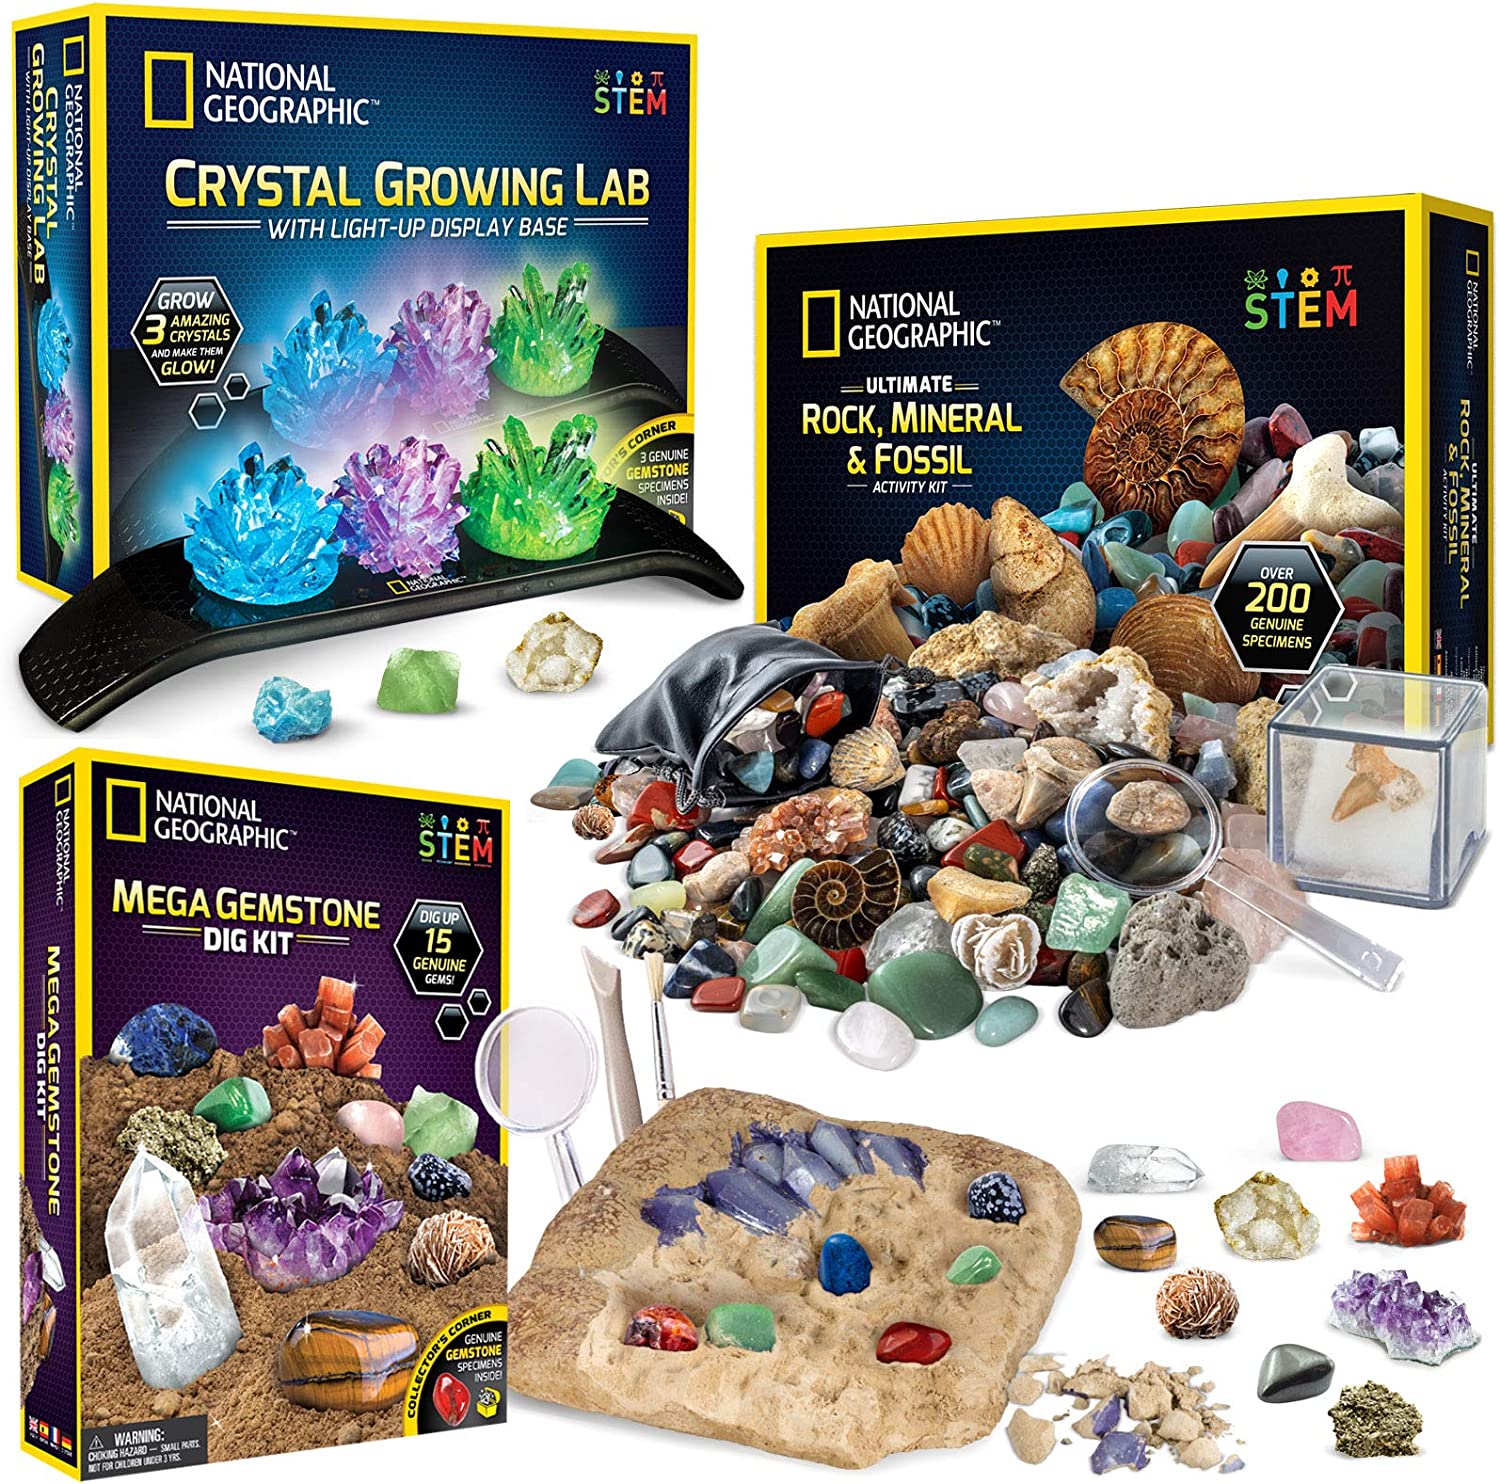 Geology-Paleontology Specimen Cabinet Trays